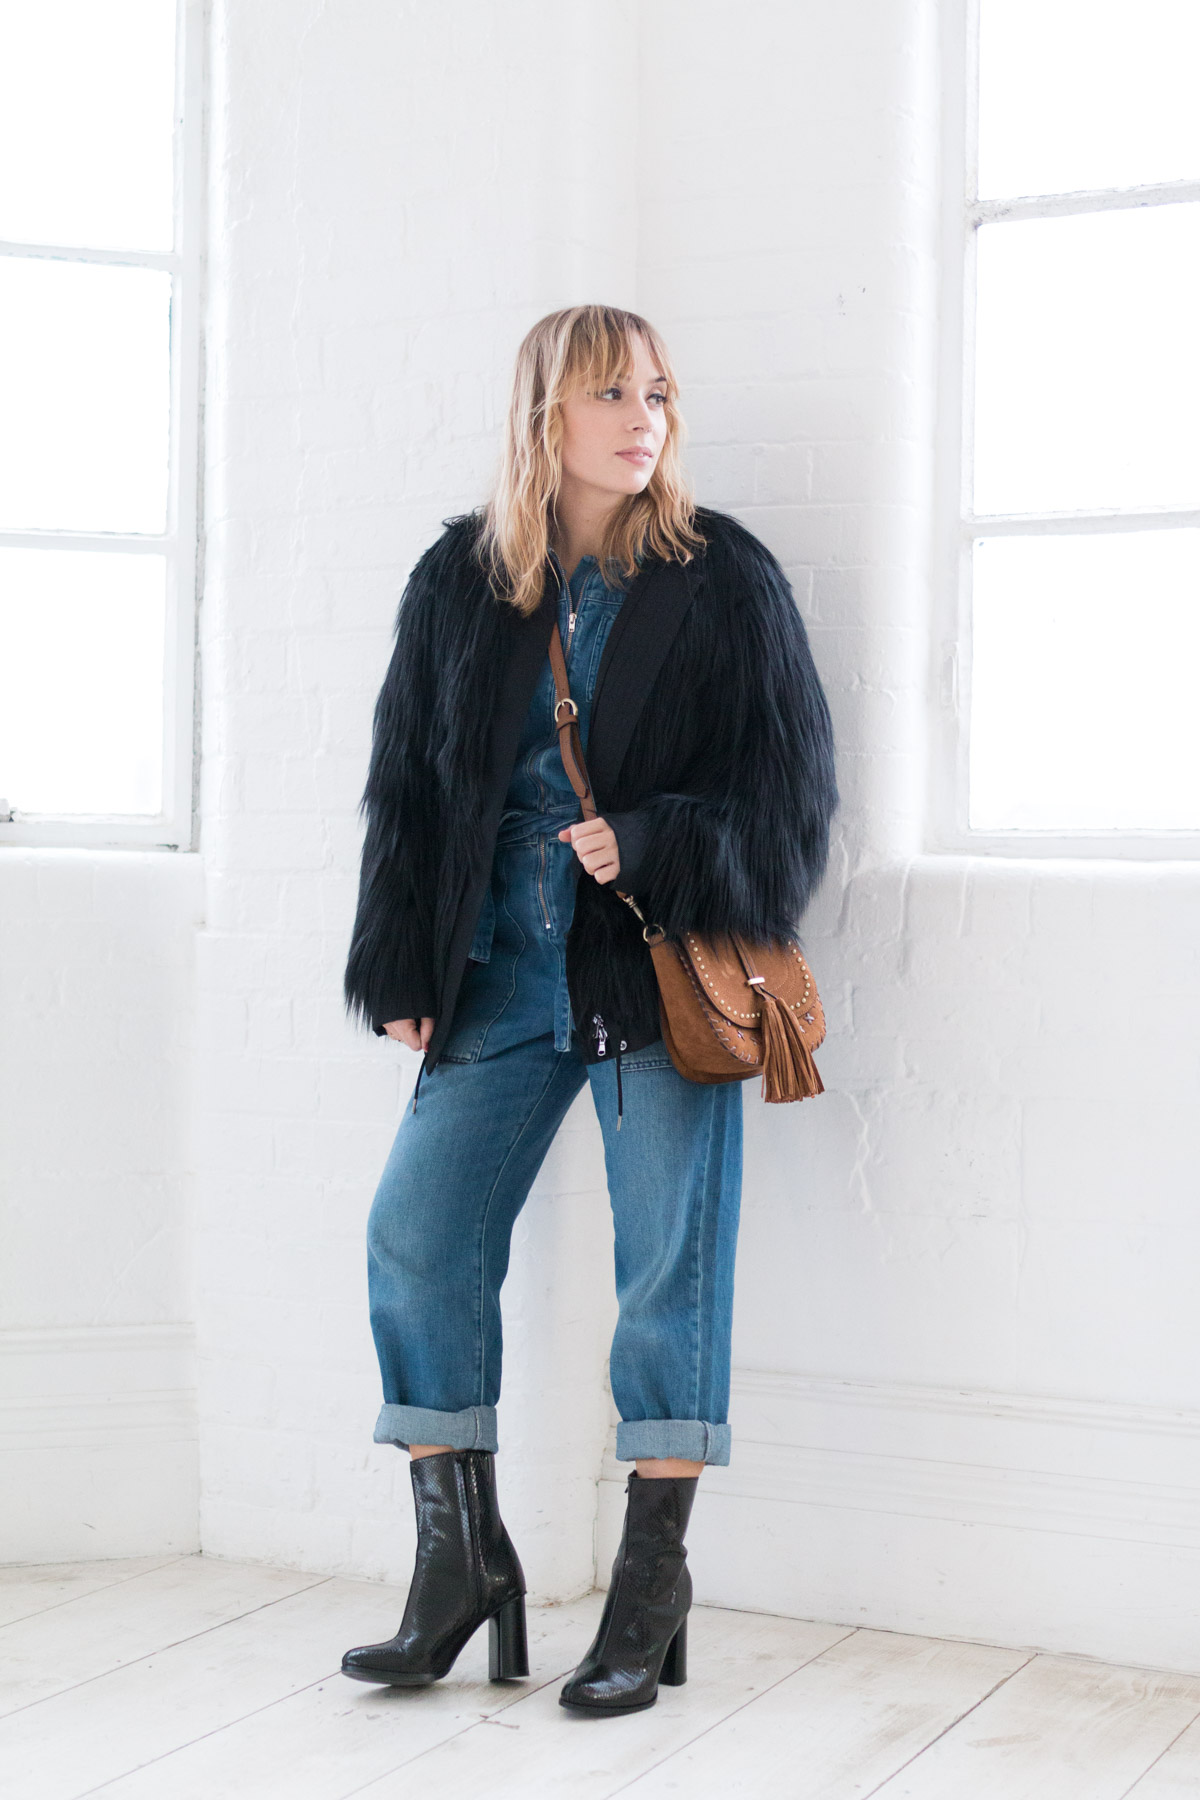 Combinaison en jean et manteau fausse fourrure I Sp4nkblog